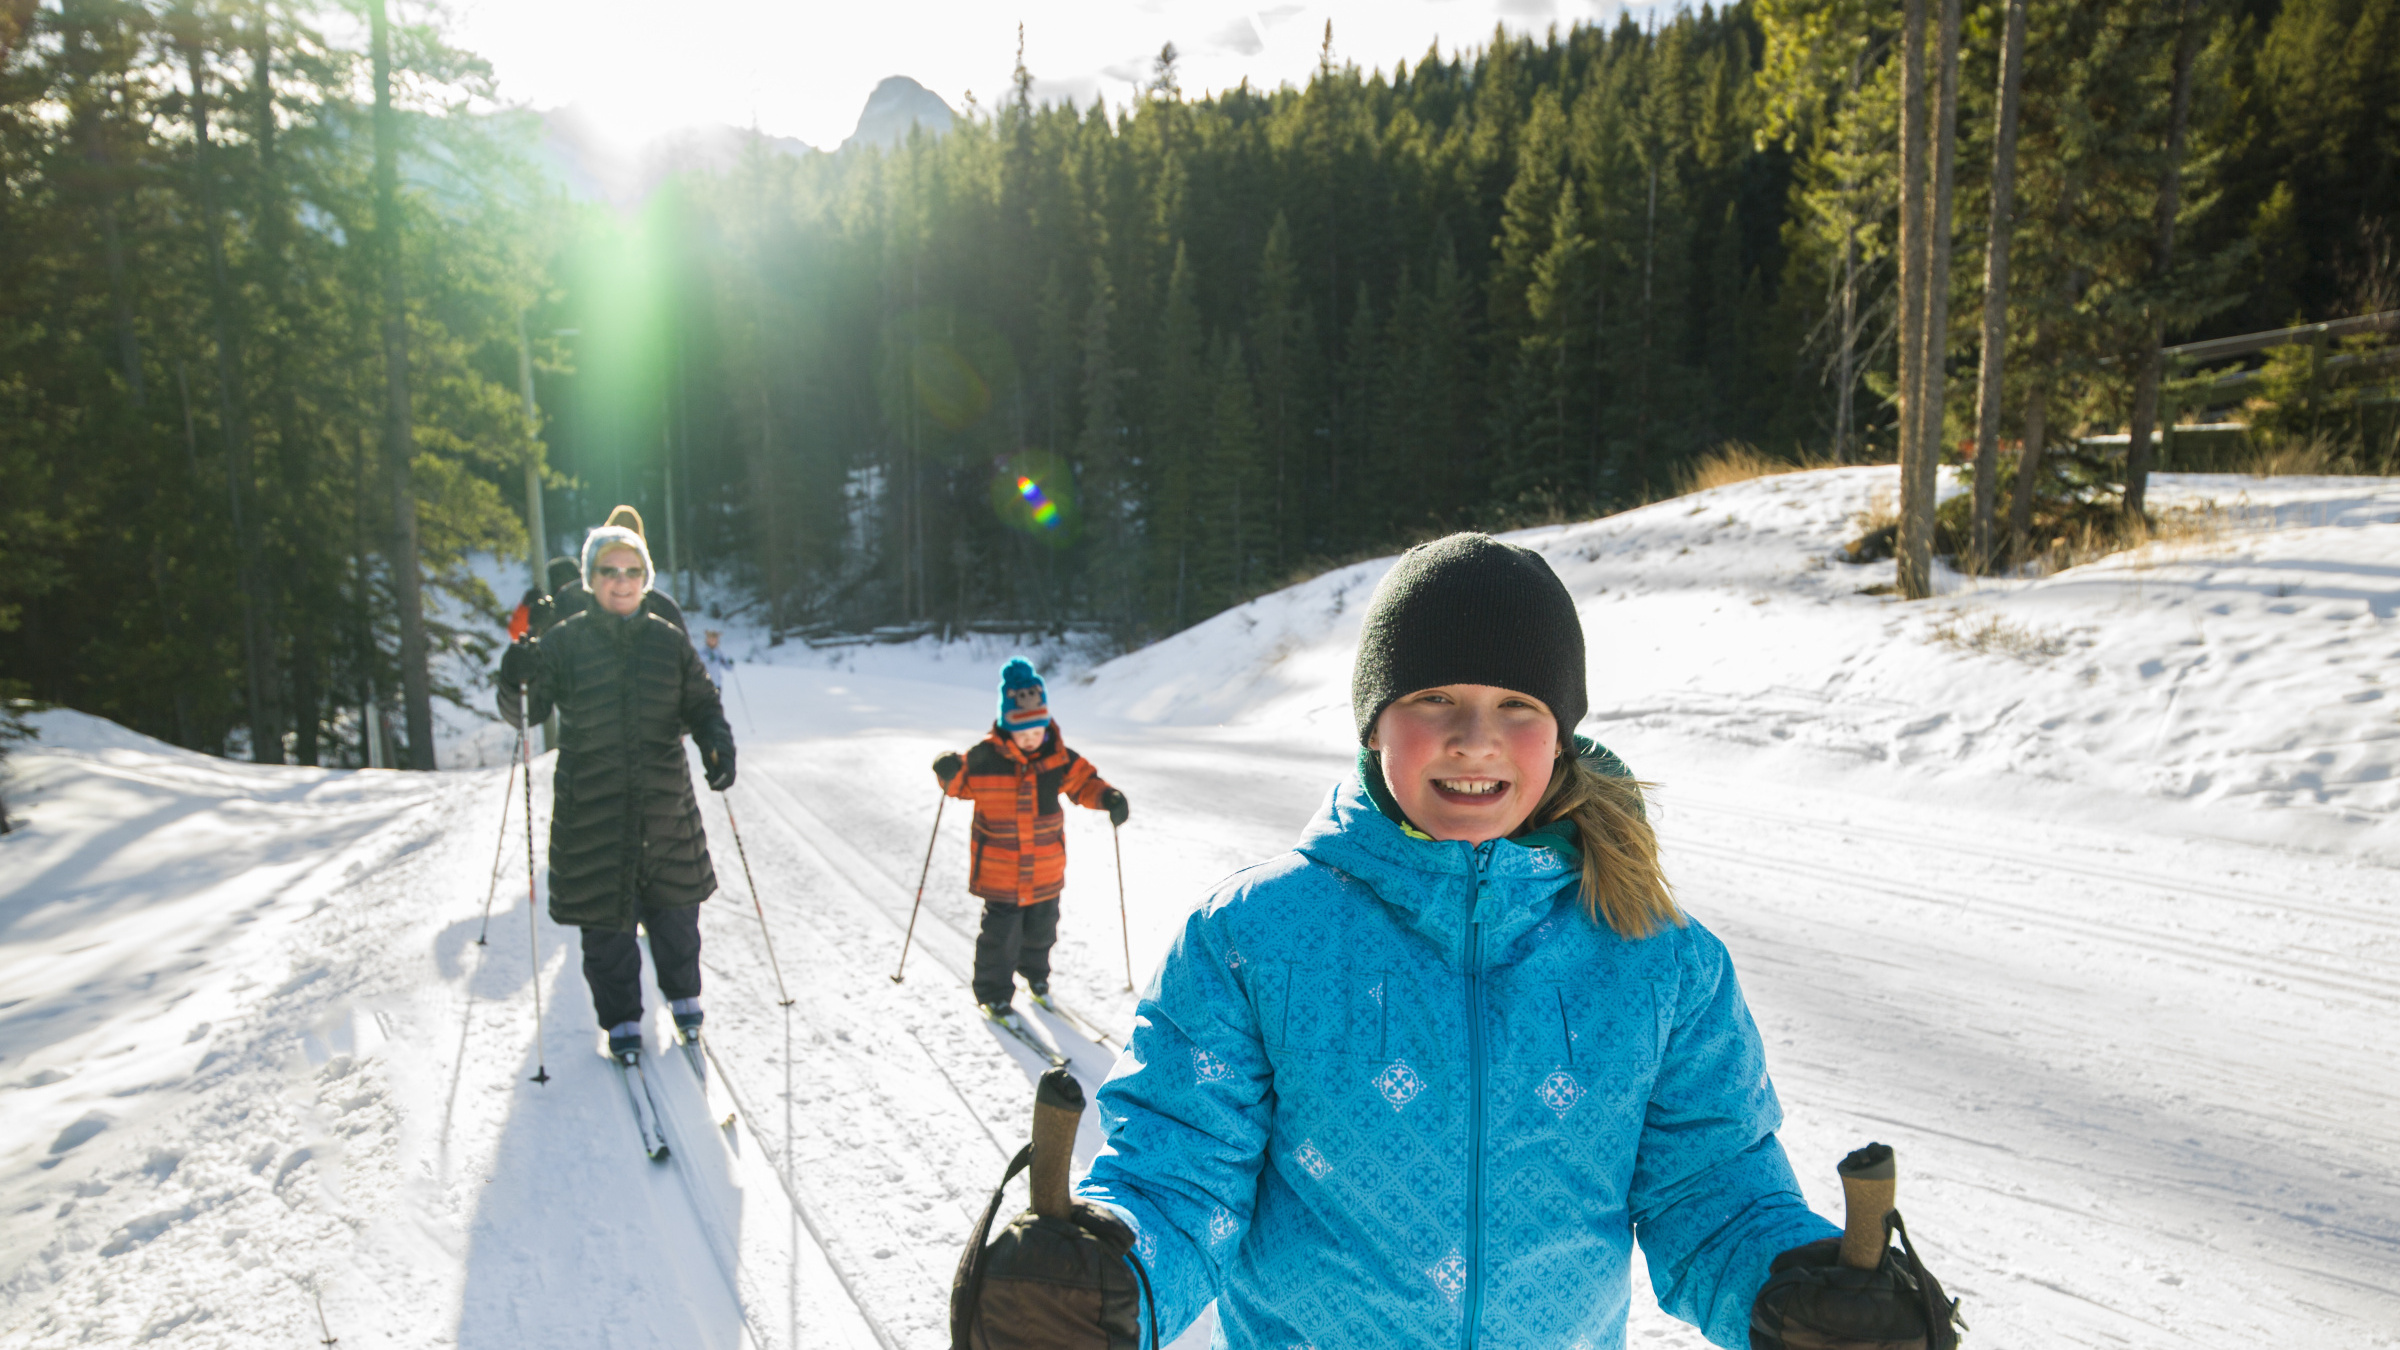 Randonnée de ski de fond en famille